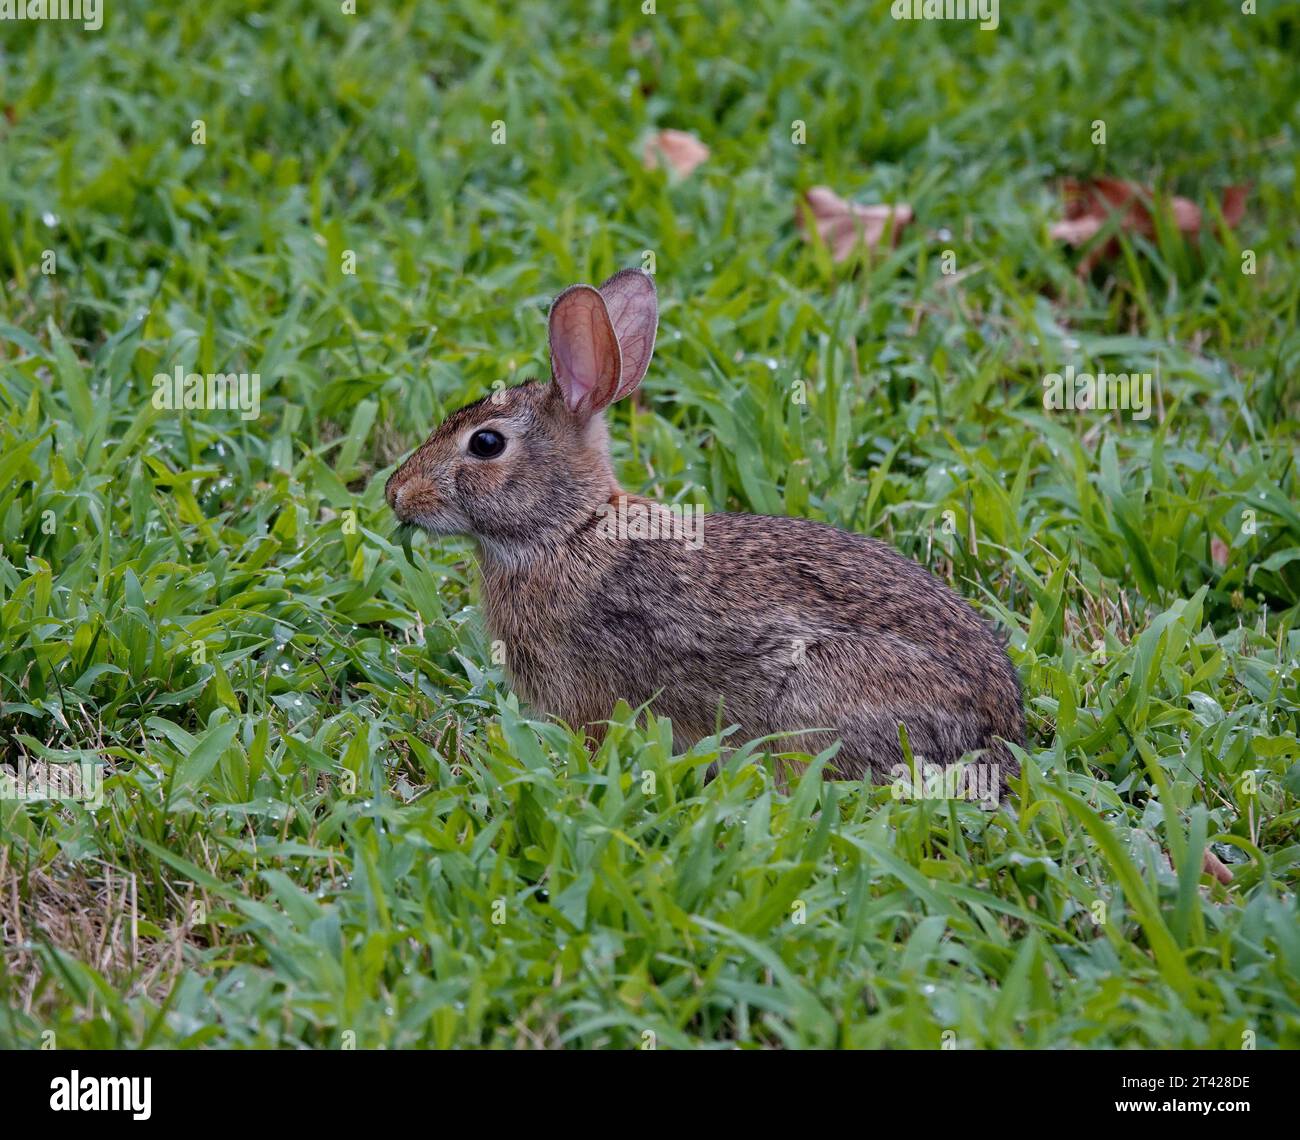 un coniglio marrone seduto su un prato, sgranocchiato su una lama d'erba. Foto Stock